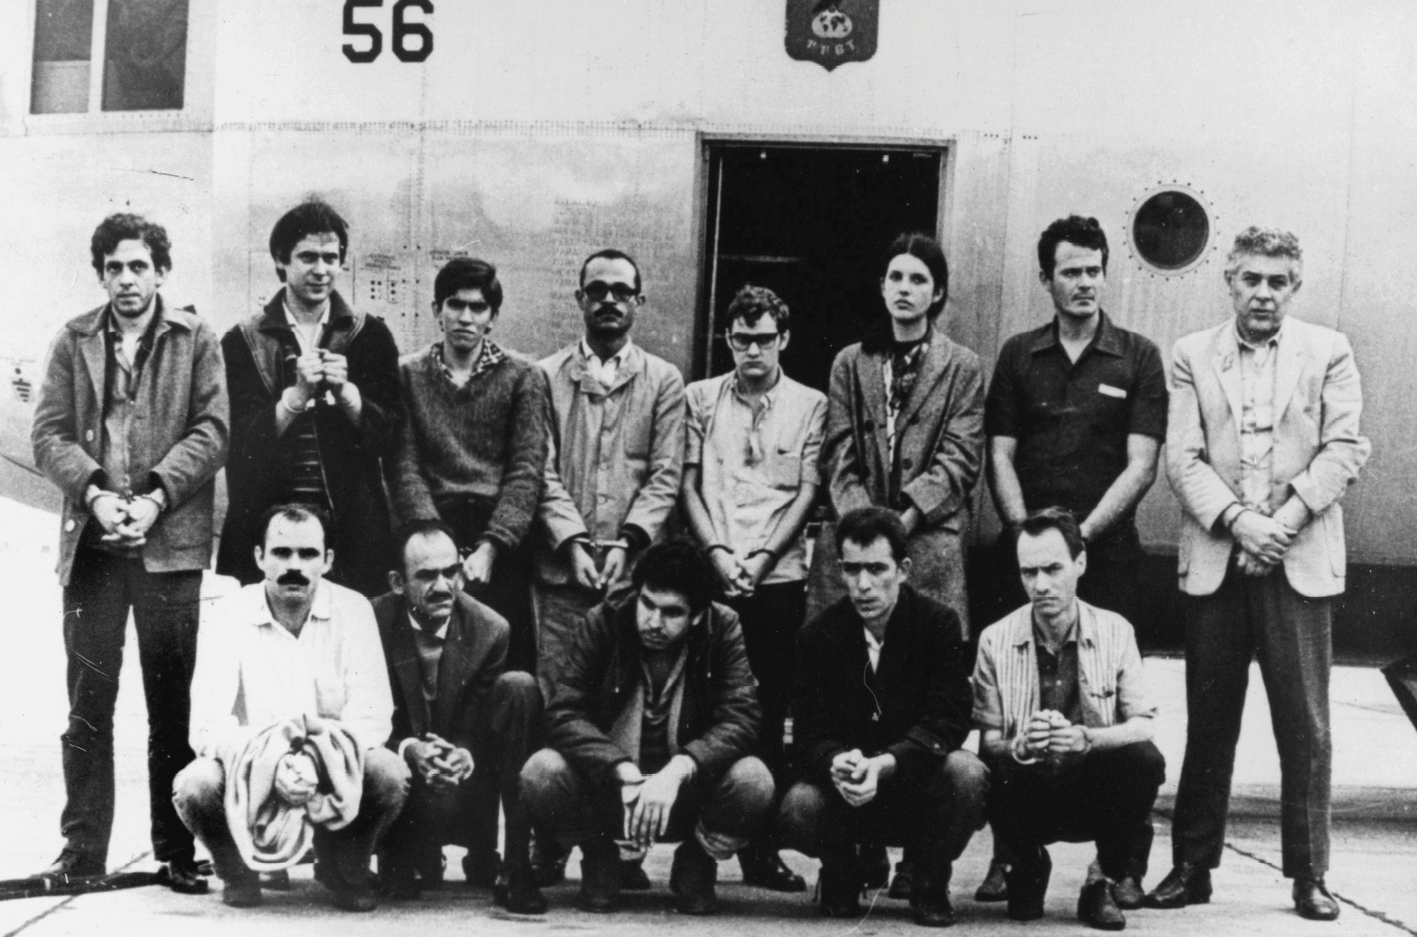 Fotografia em preto e branco. Treze pessoas de mãos algemadas, organizados em duas fileiras. As cinco pessoas na fileira da frente estão agachadas. Ao fundo, parte da fuselagem de um avião.